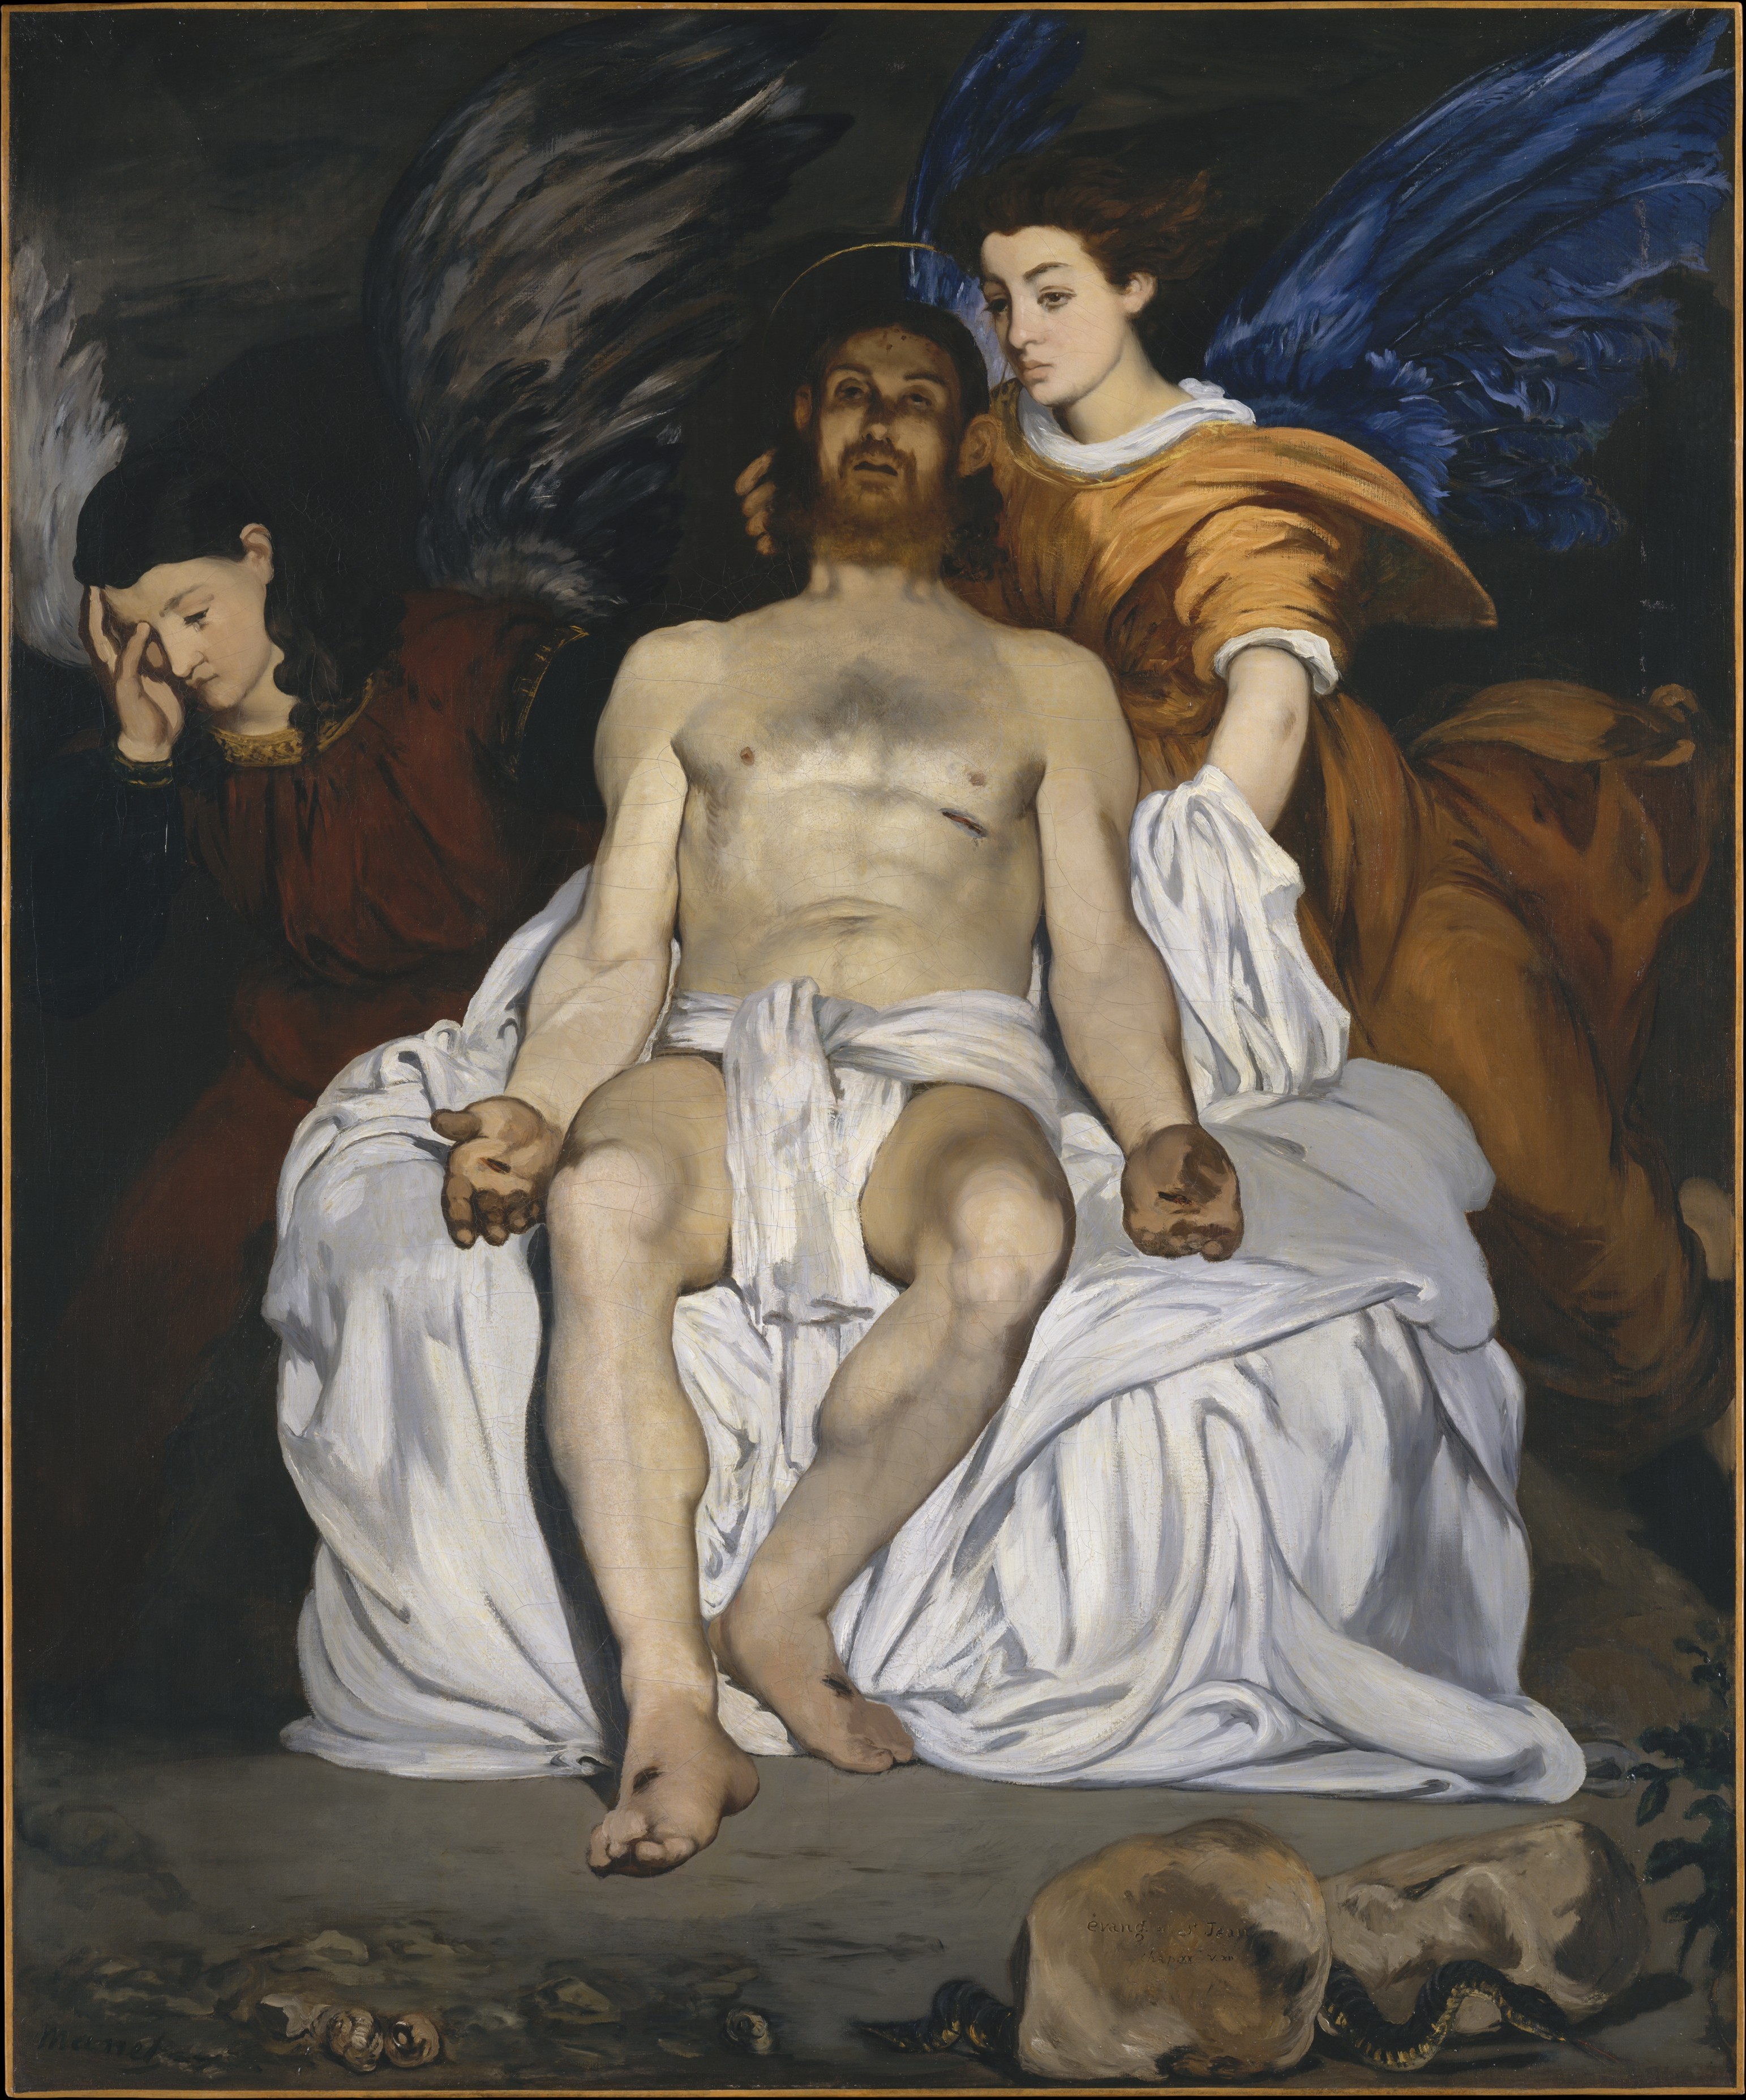 A halott Krisztus és az angyalok by Édouard Manet - 1864 - 179.4 x 149.9 cm 